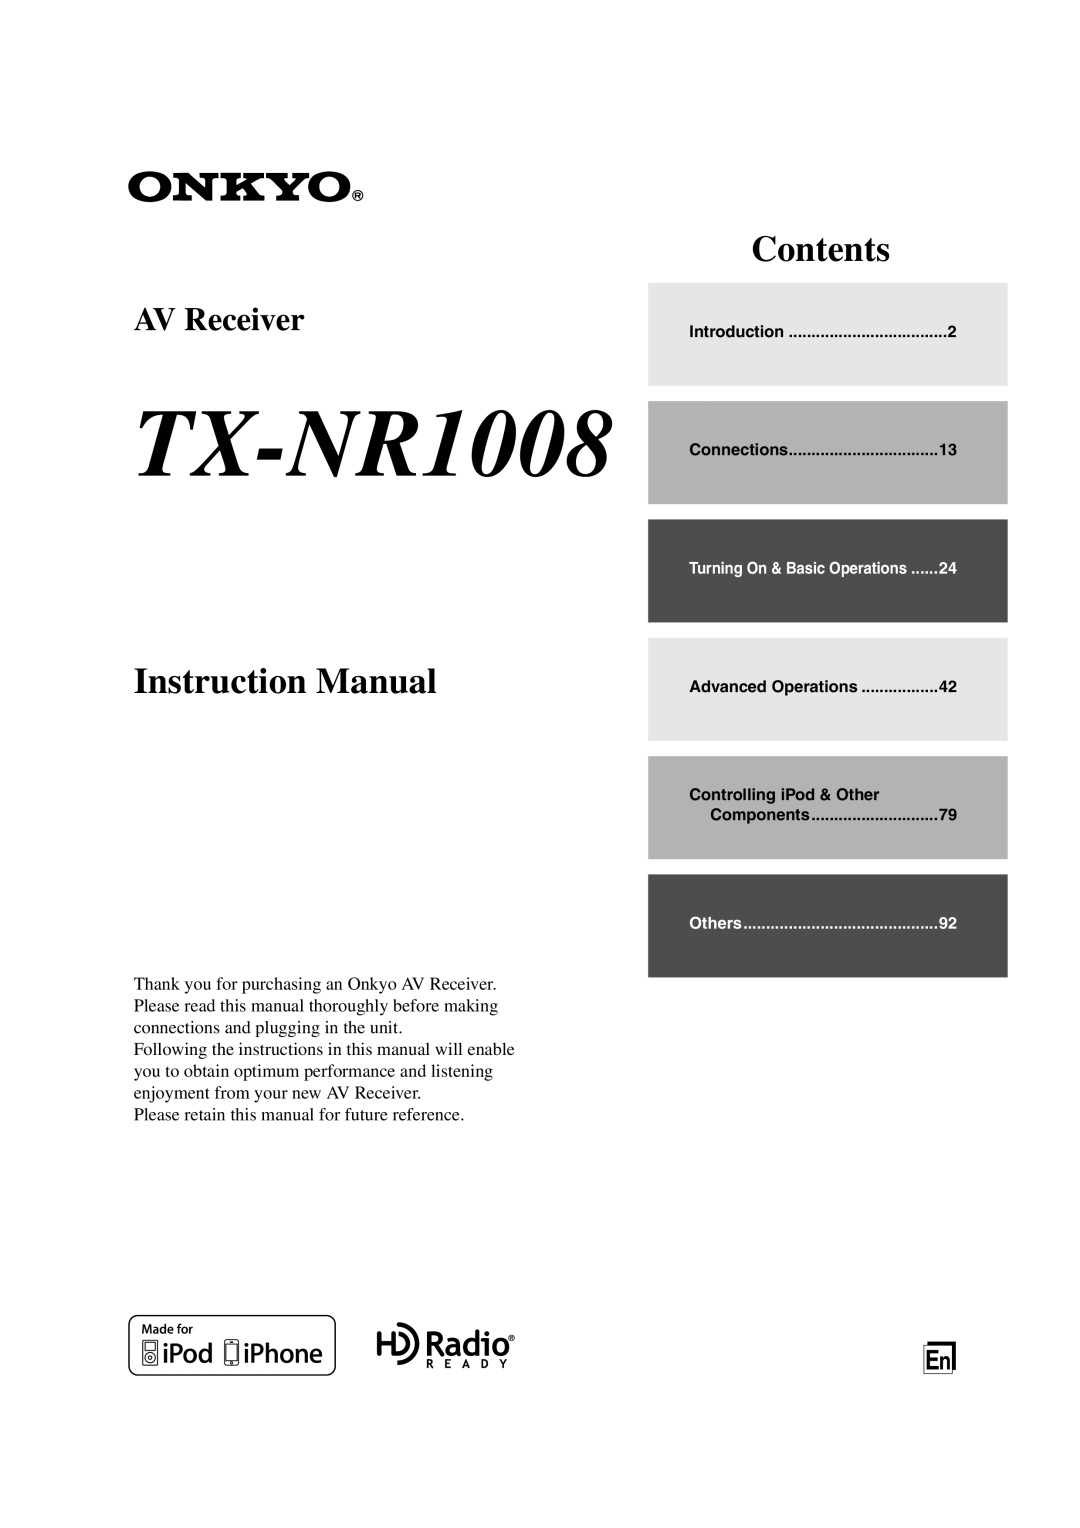 Onkyo TX-NR1008 instruction manual Contents, Instruction Manual, AV Receiver 